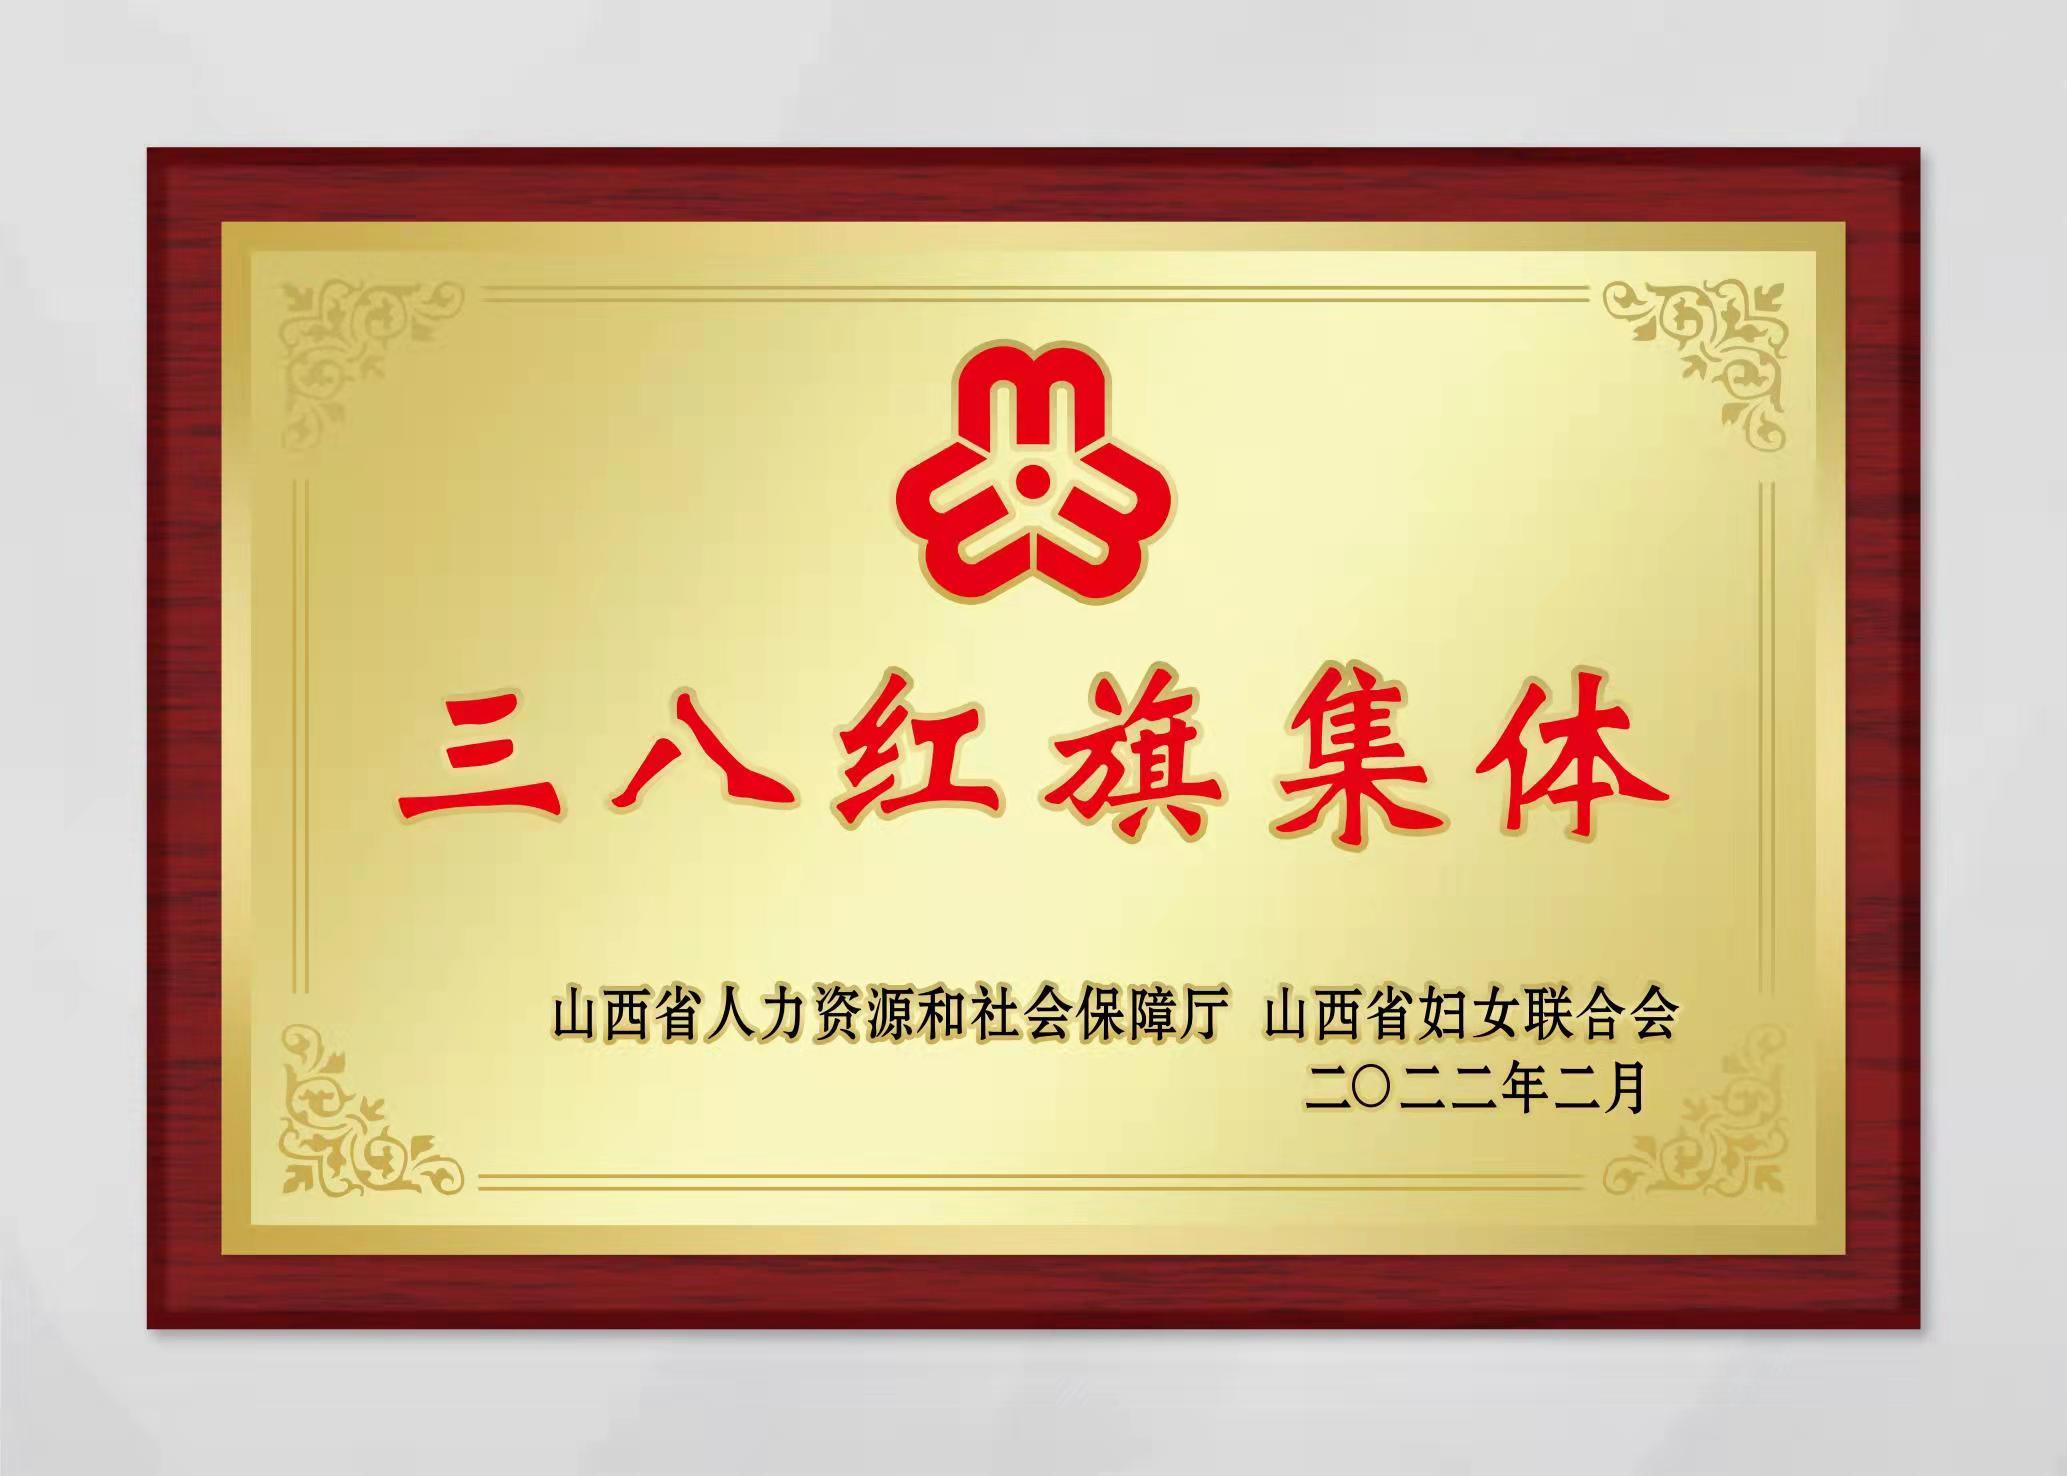 山西中科潞安紫外光電科技有限公司被評為山西省三八婦女先進集體。